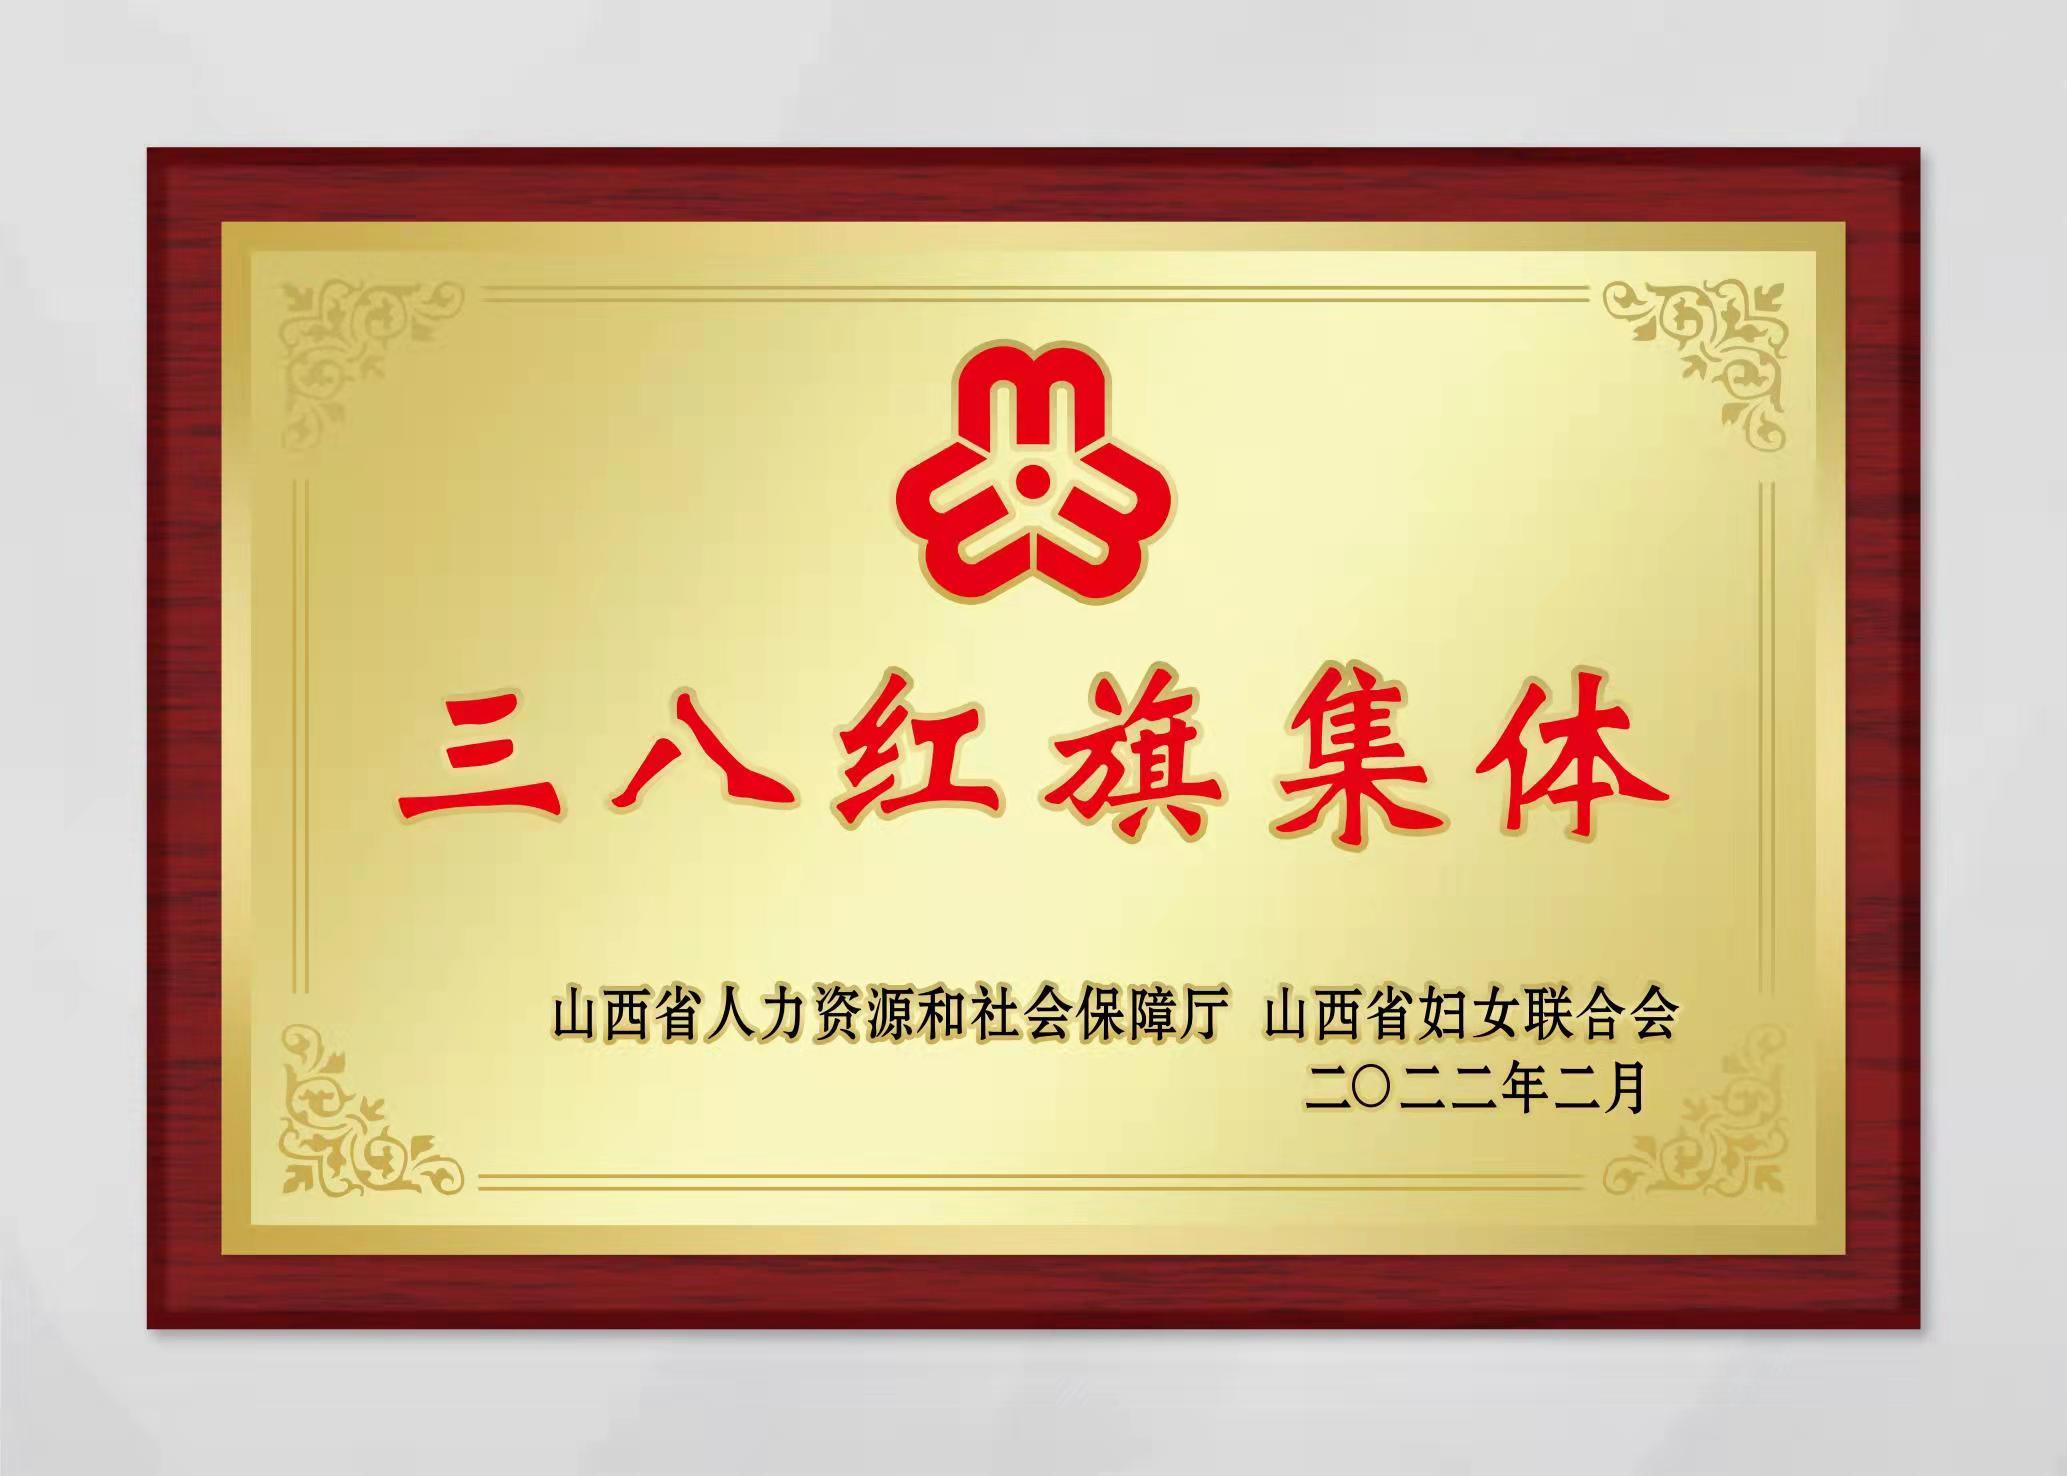 山西中科潞安紫外光電科技有限公司被評為山西省三八婦女先進集體。